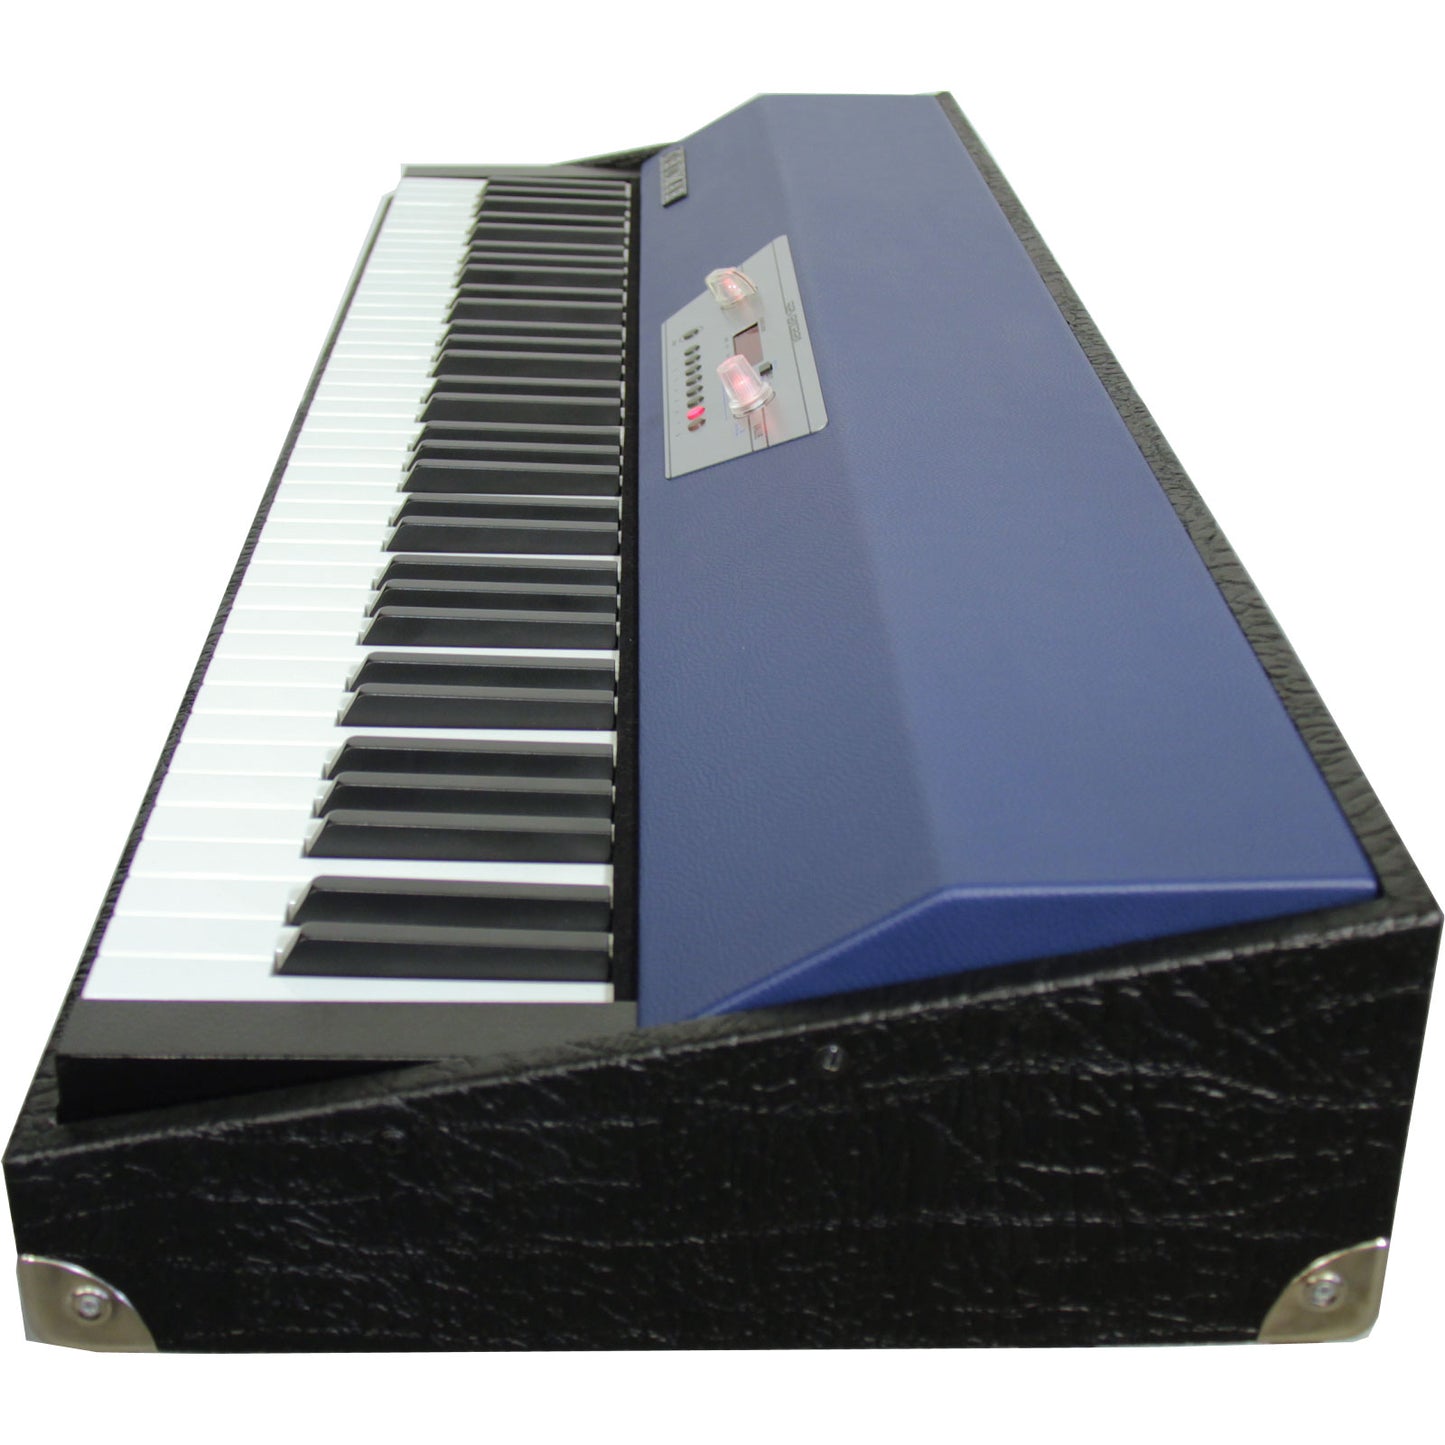 Crumar Seventeen Vintage Modeled Digital Piano